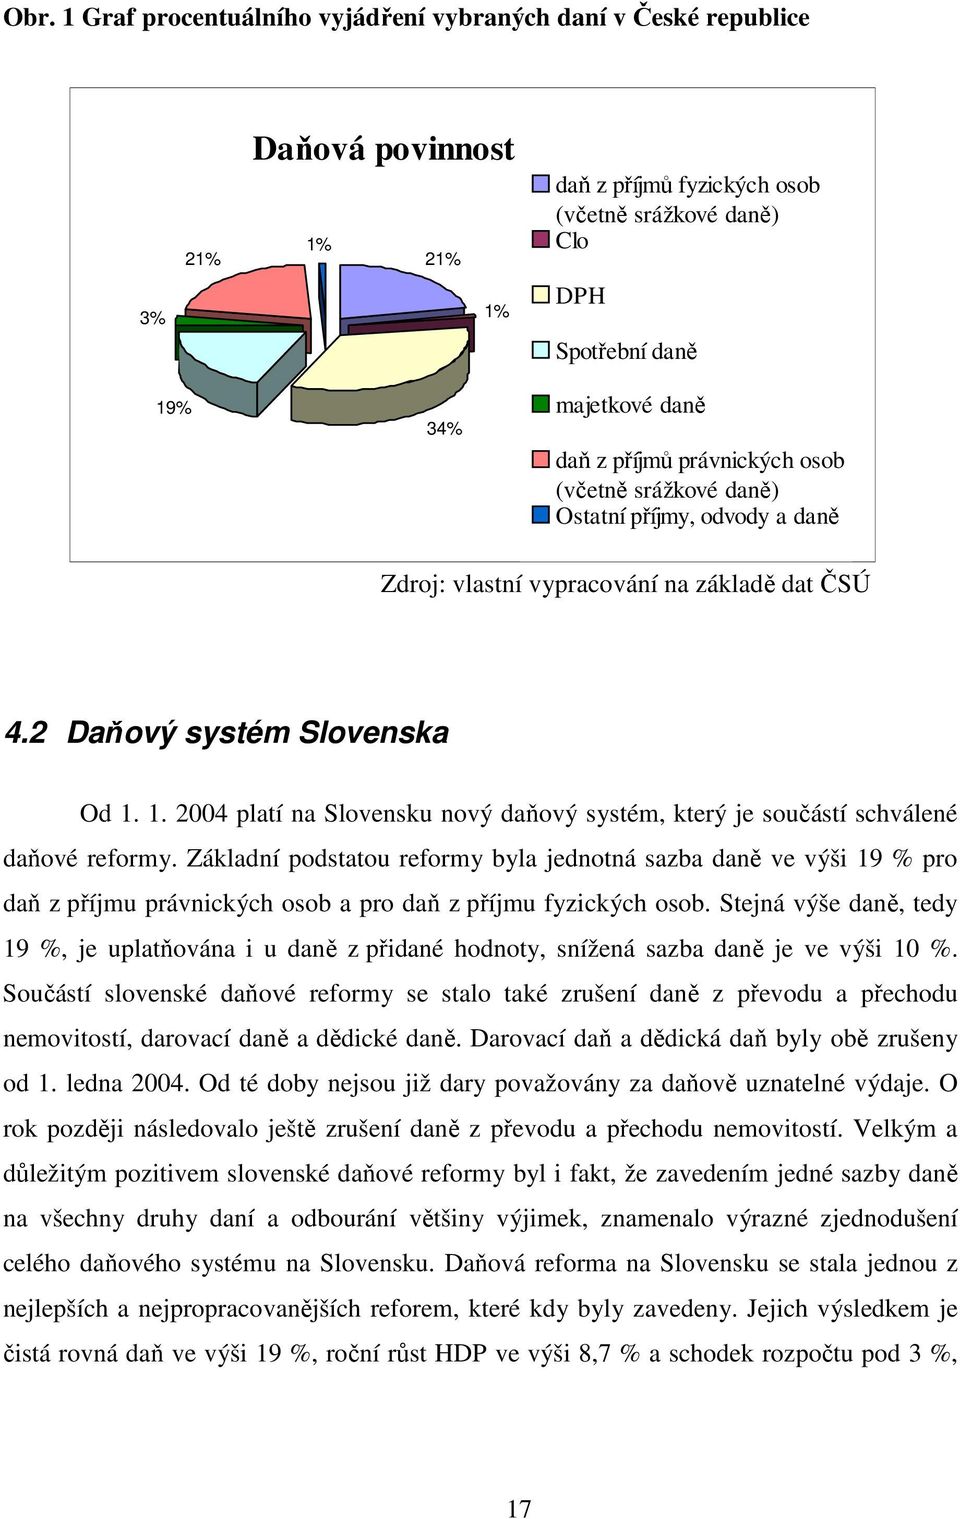 1. 2004 platí na Slovensku nový daňový systém, který je součástí schválené daňové reformy.